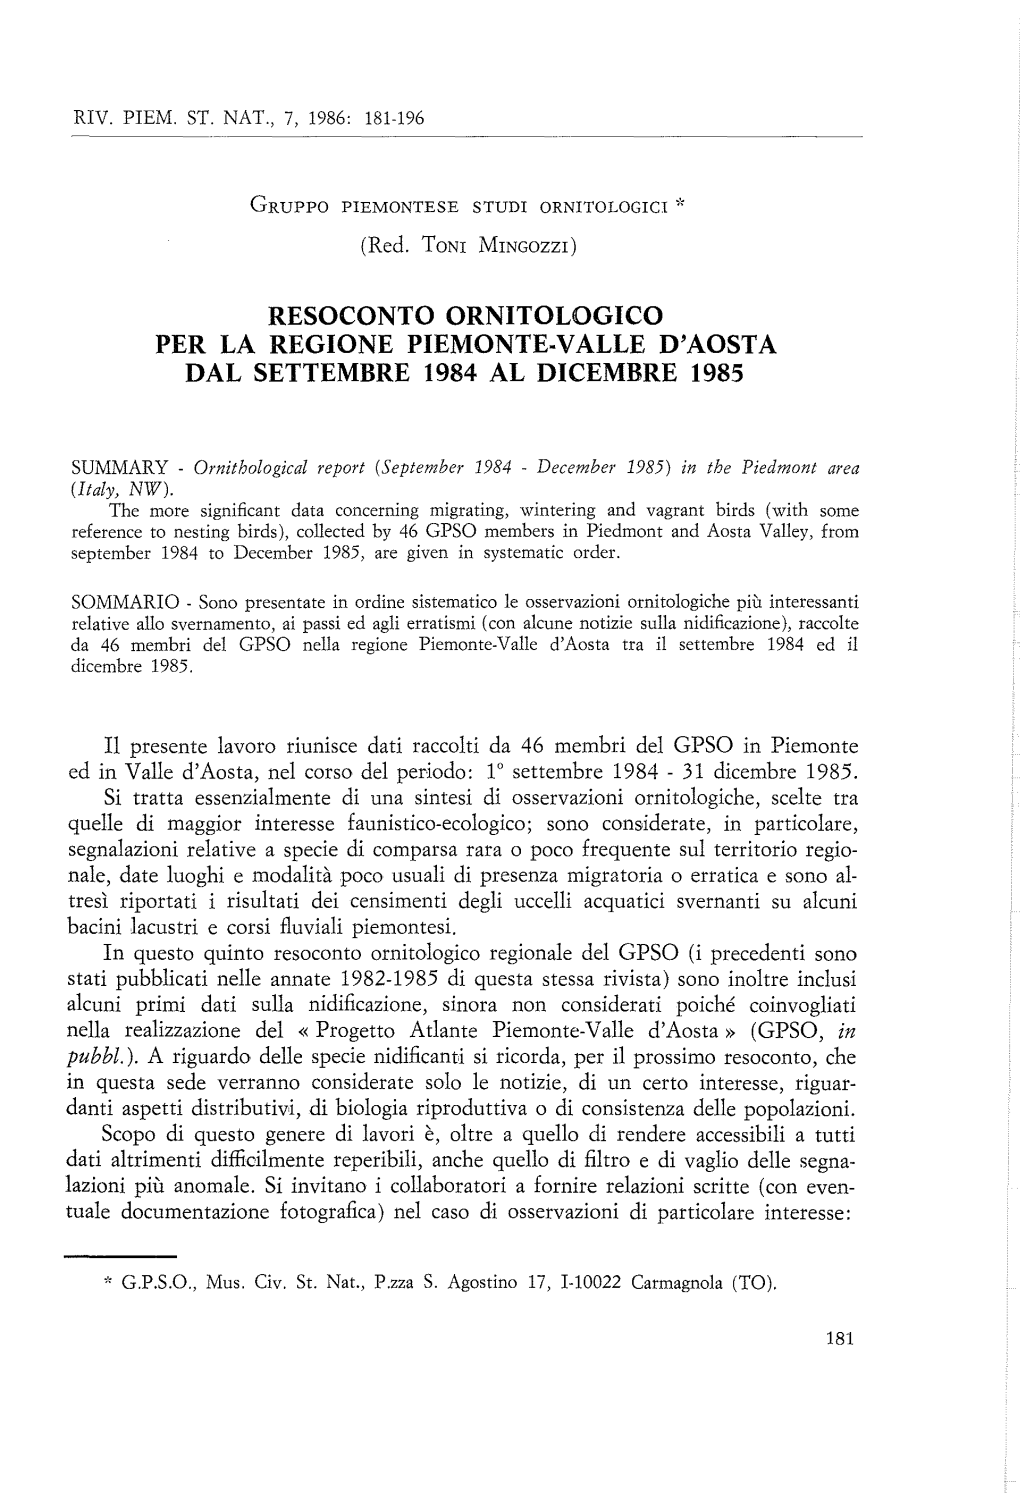 Resoconto Ornitologico Per La Regione Piemonte·Valle D'aosta Dal Settembre 1984 Al Dicembre 1985